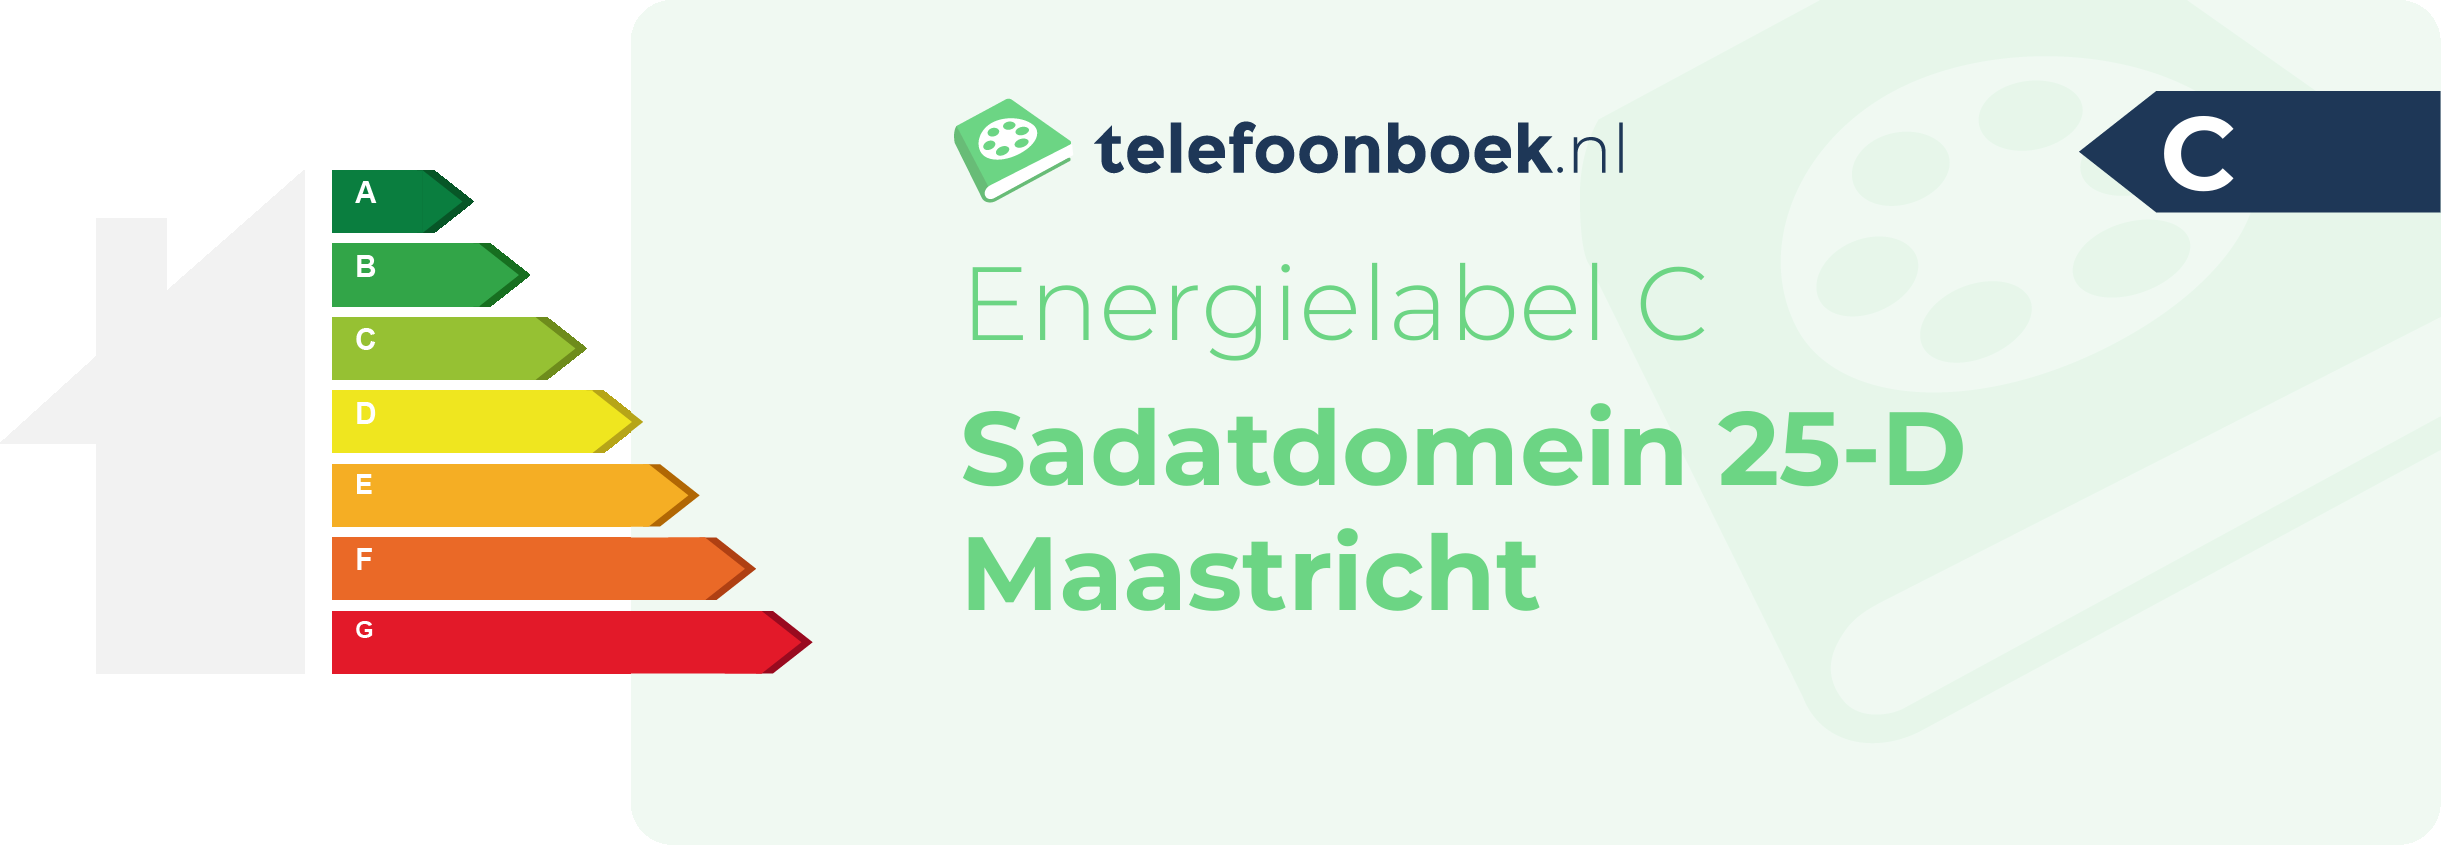 Energielabel Sadatdomein 25-D Maastricht